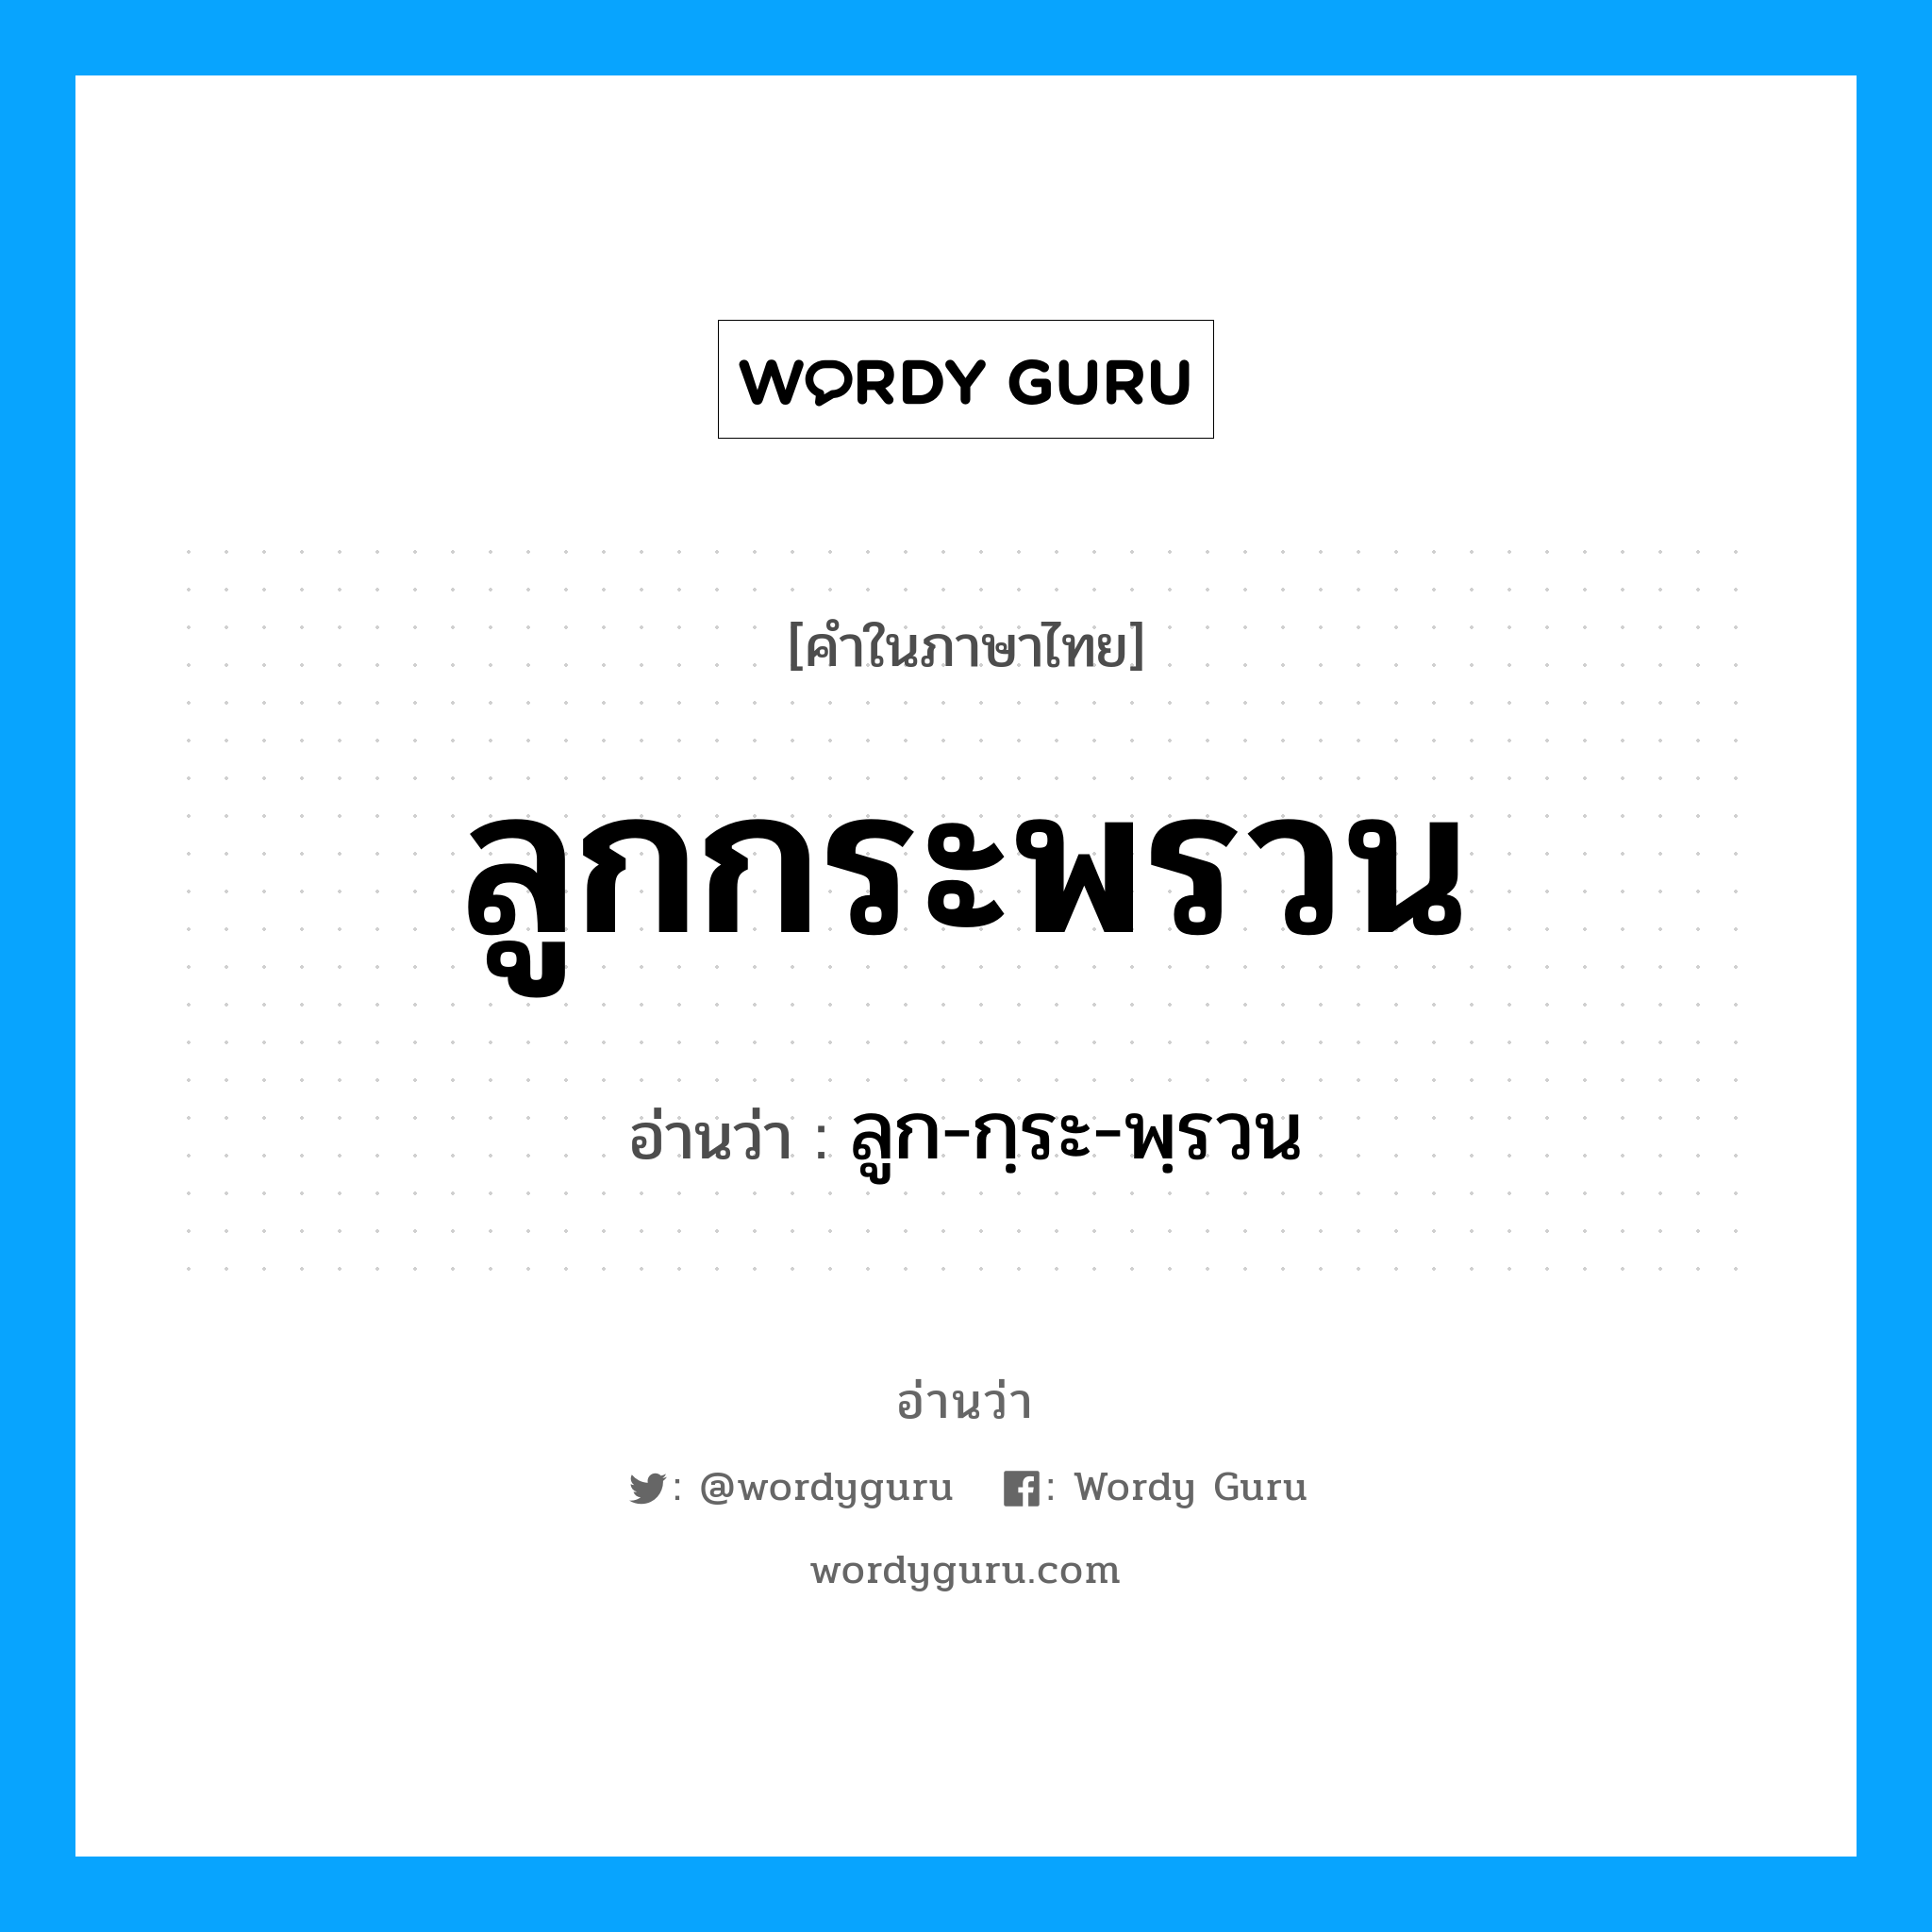 ลูก-กฺระ-พฺรวน เป็นคำอ่านของคำไหน?, คำในภาษาไทย ลูก-กฺระ-พฺรวน อ่านว่า ลูกกระพรวน